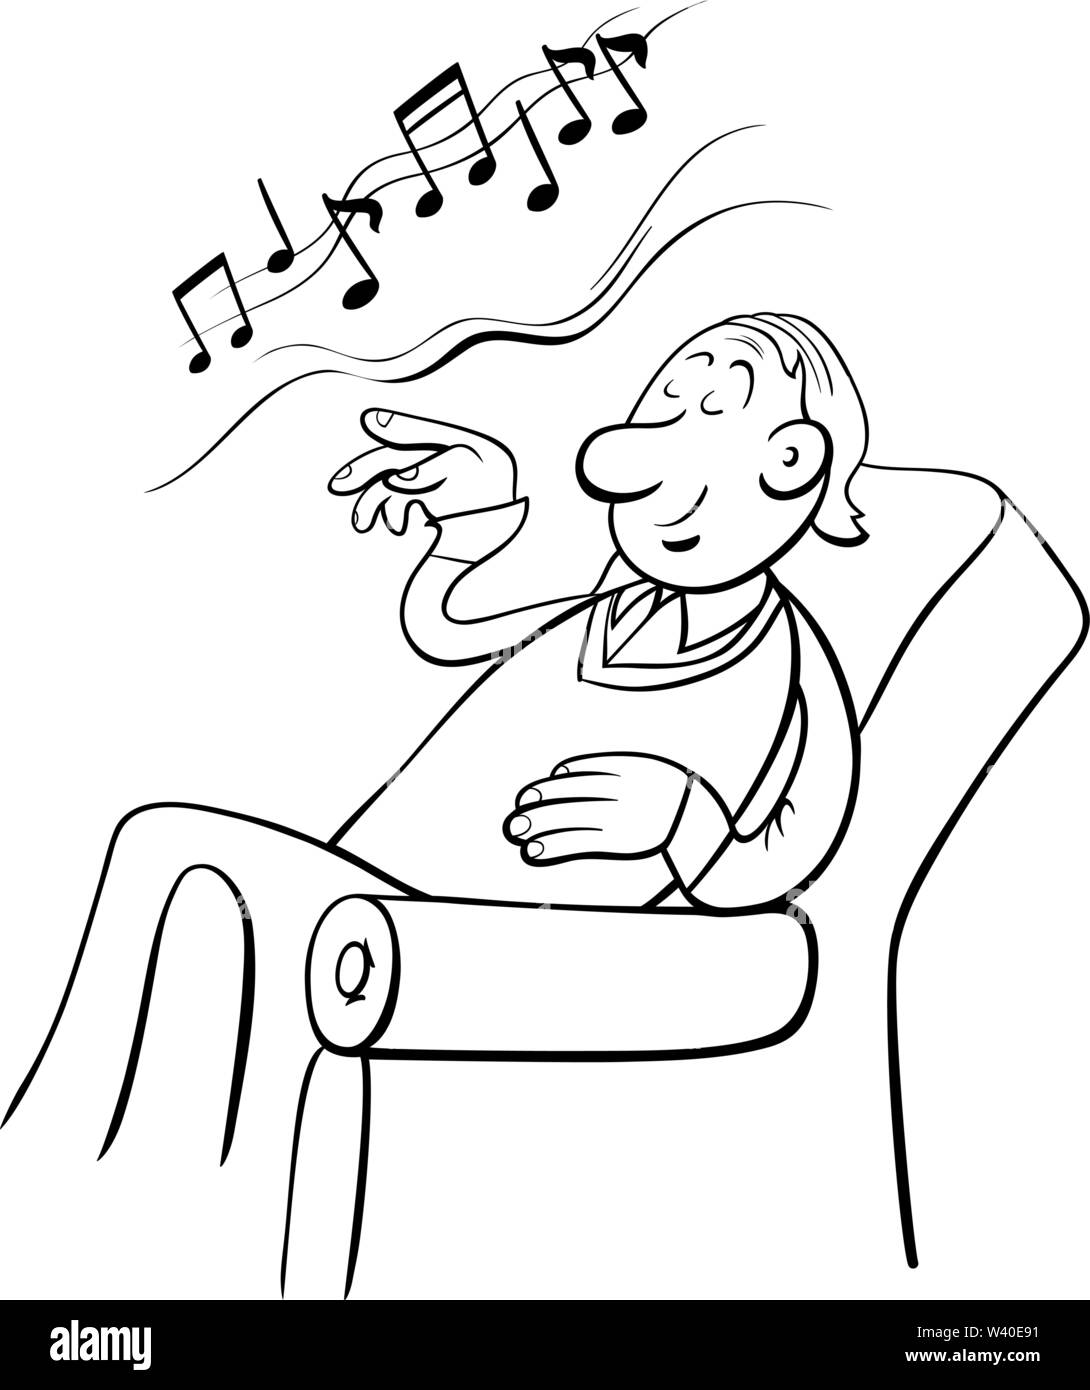 Cartoon noir et blanc illustration de l'homme amoureux de la musique en fauteuil Coloring Book Illustration de Vecteur